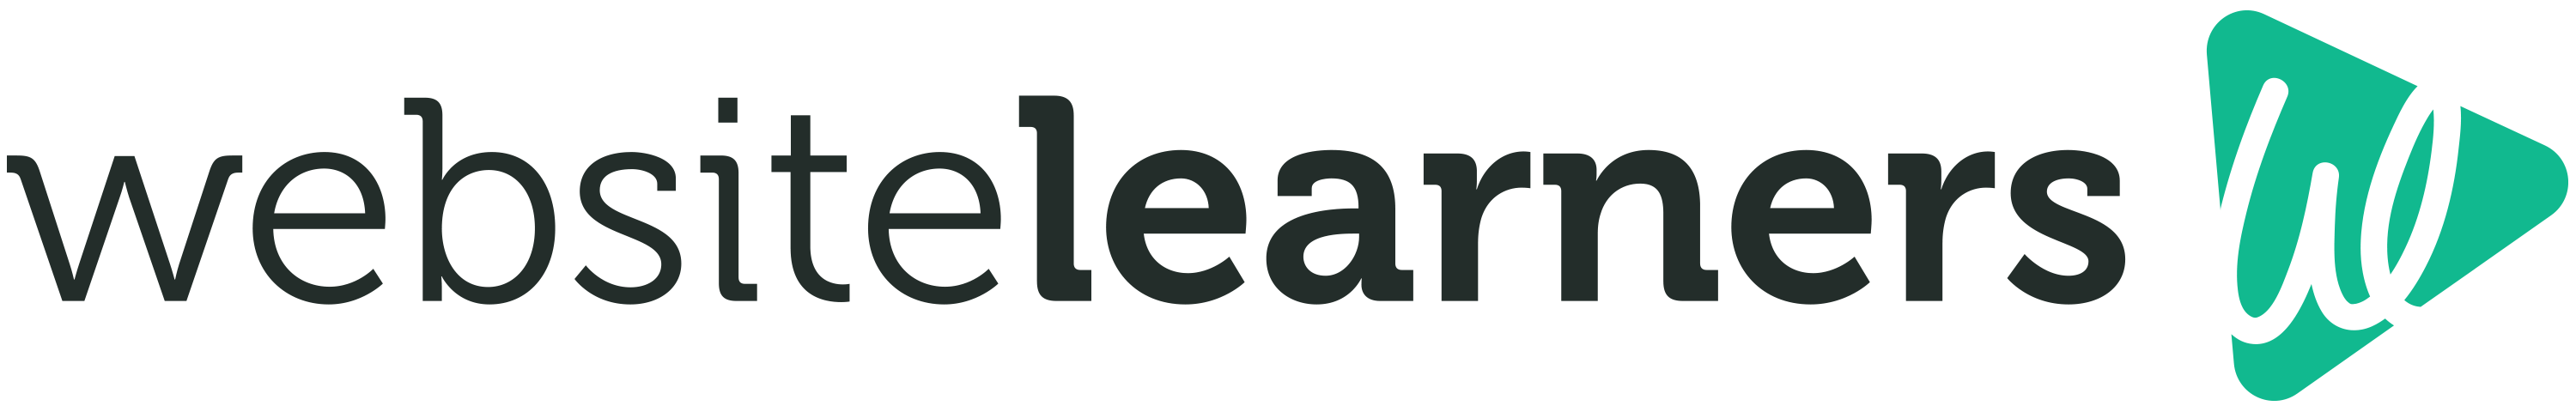 Website Learners